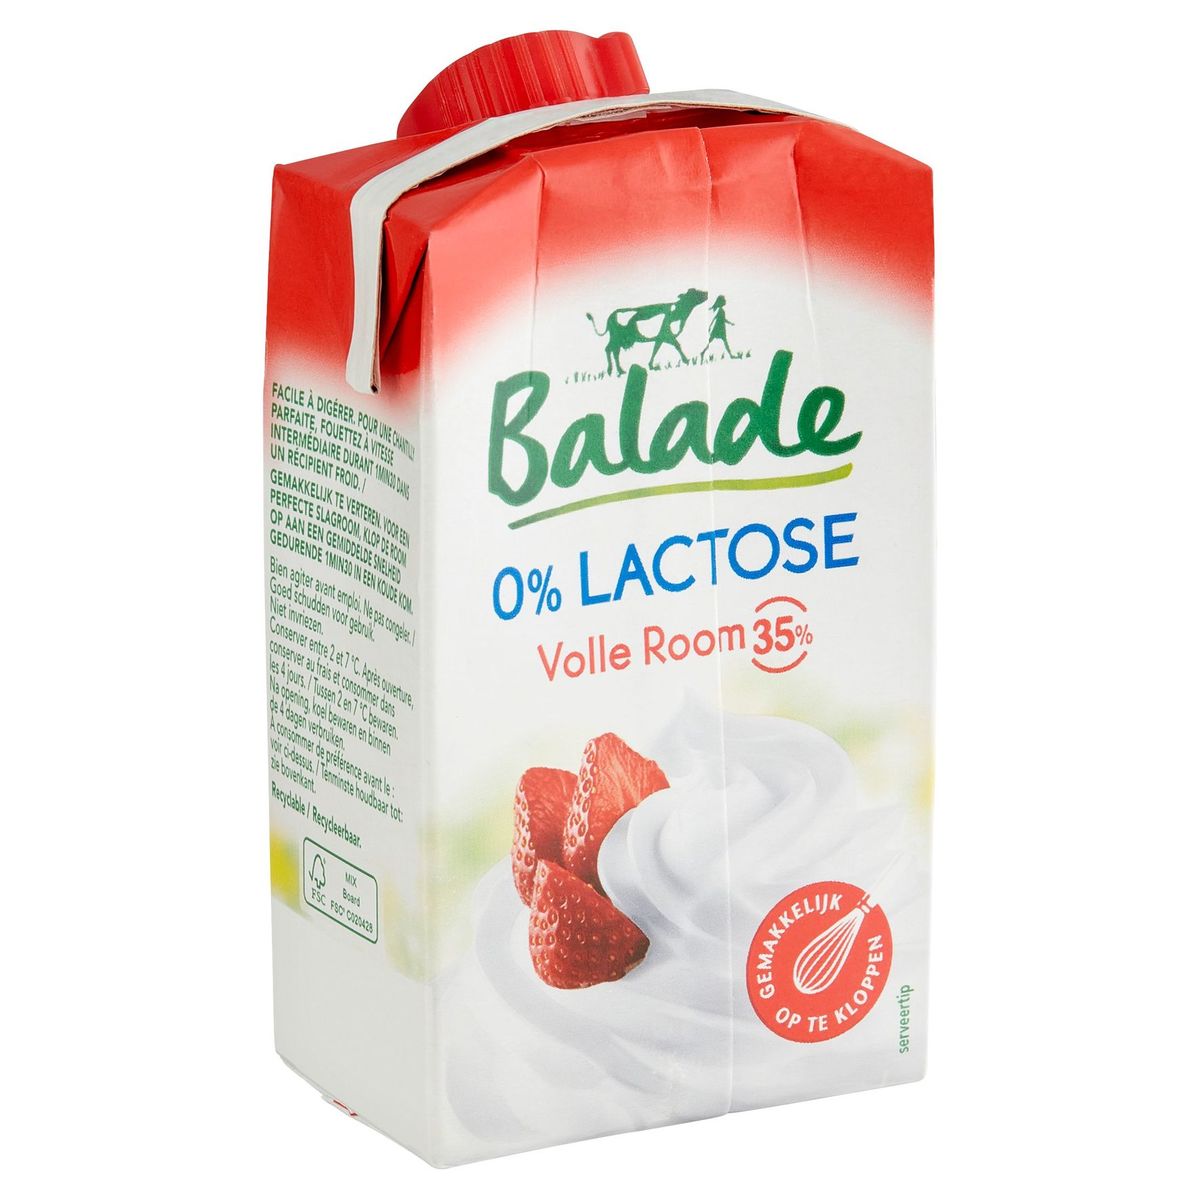 Balade 0% Lactose Crème Entière 35% 25 cl